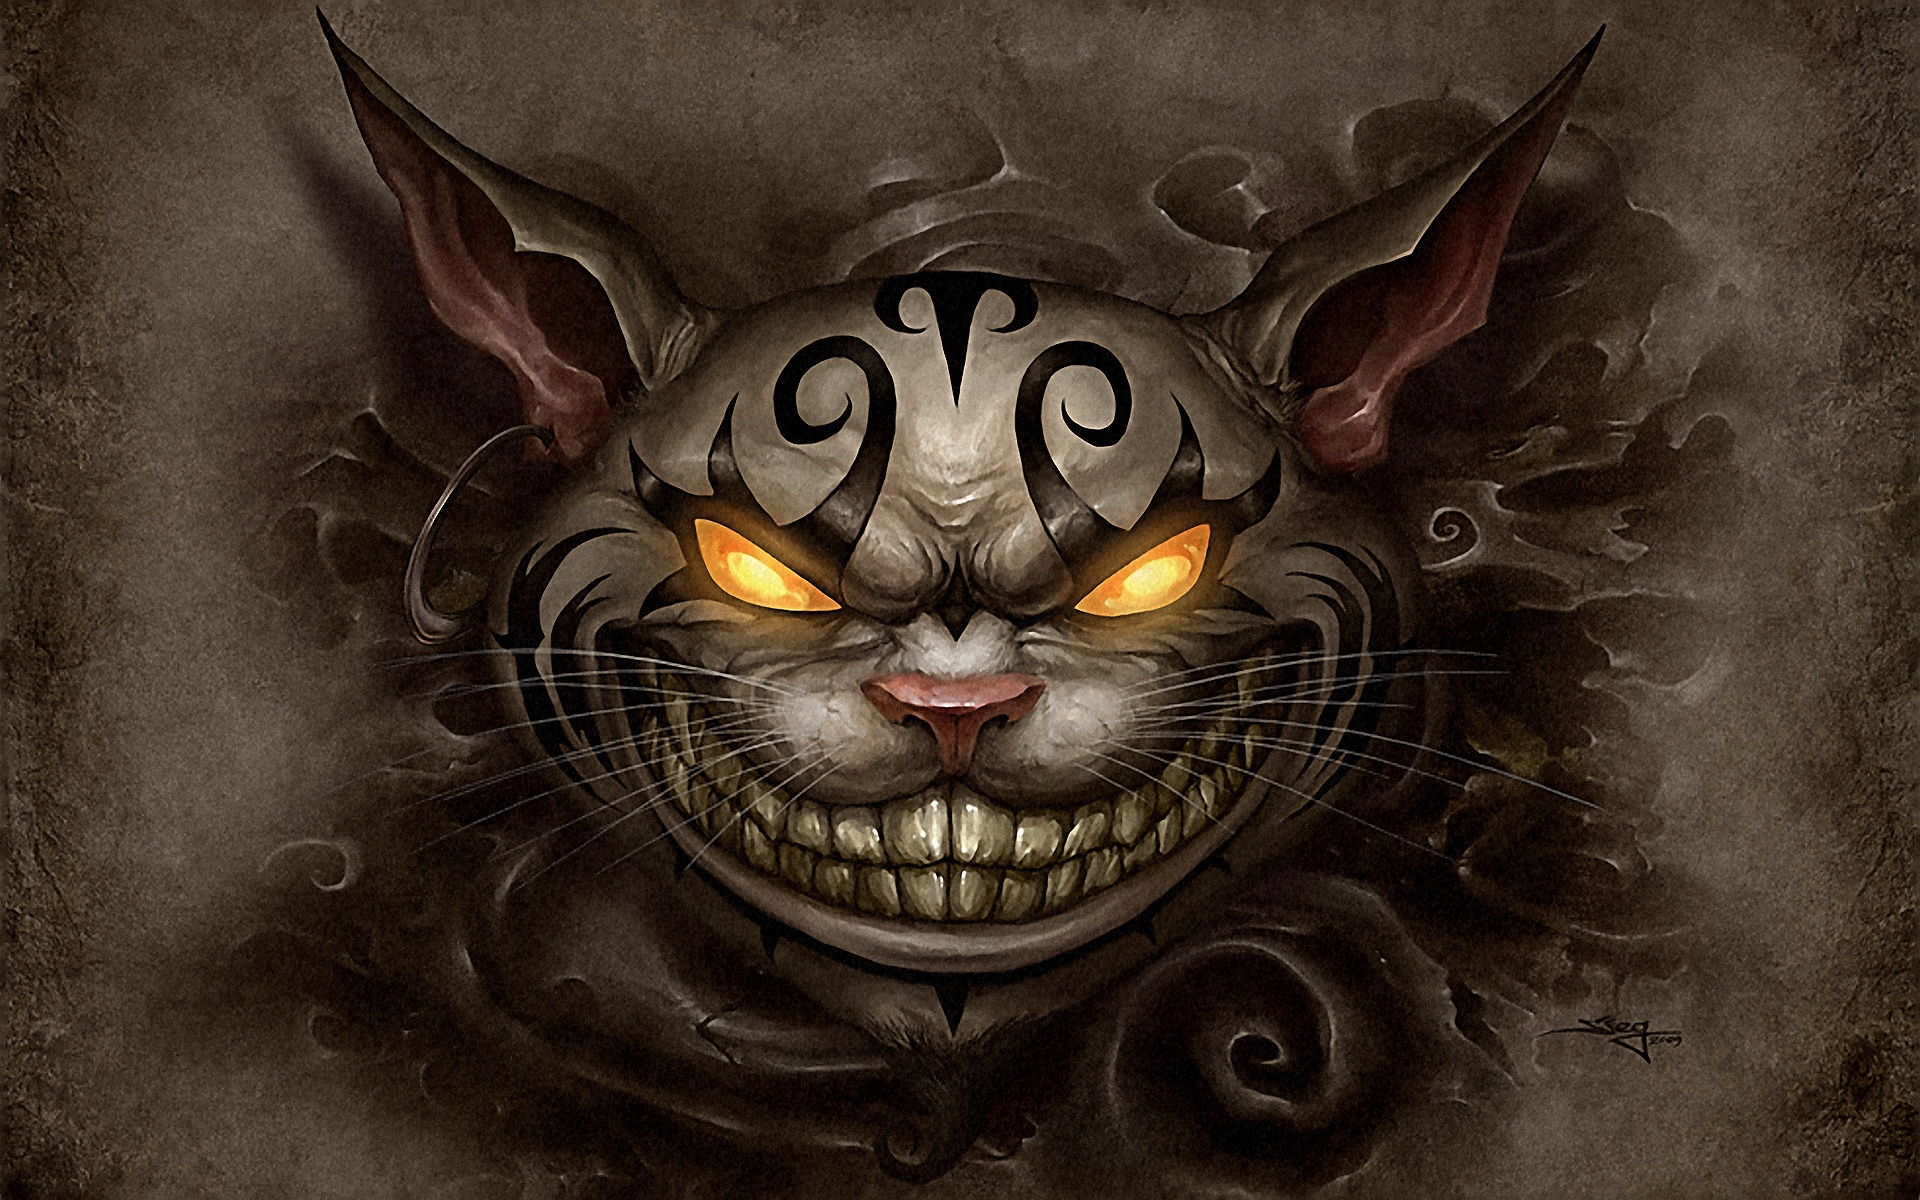 壁紙 19x10 アリス アリス イン ナイトメア Cheshire Cat 動物のスナウト ゲーム ダウンロード 写真